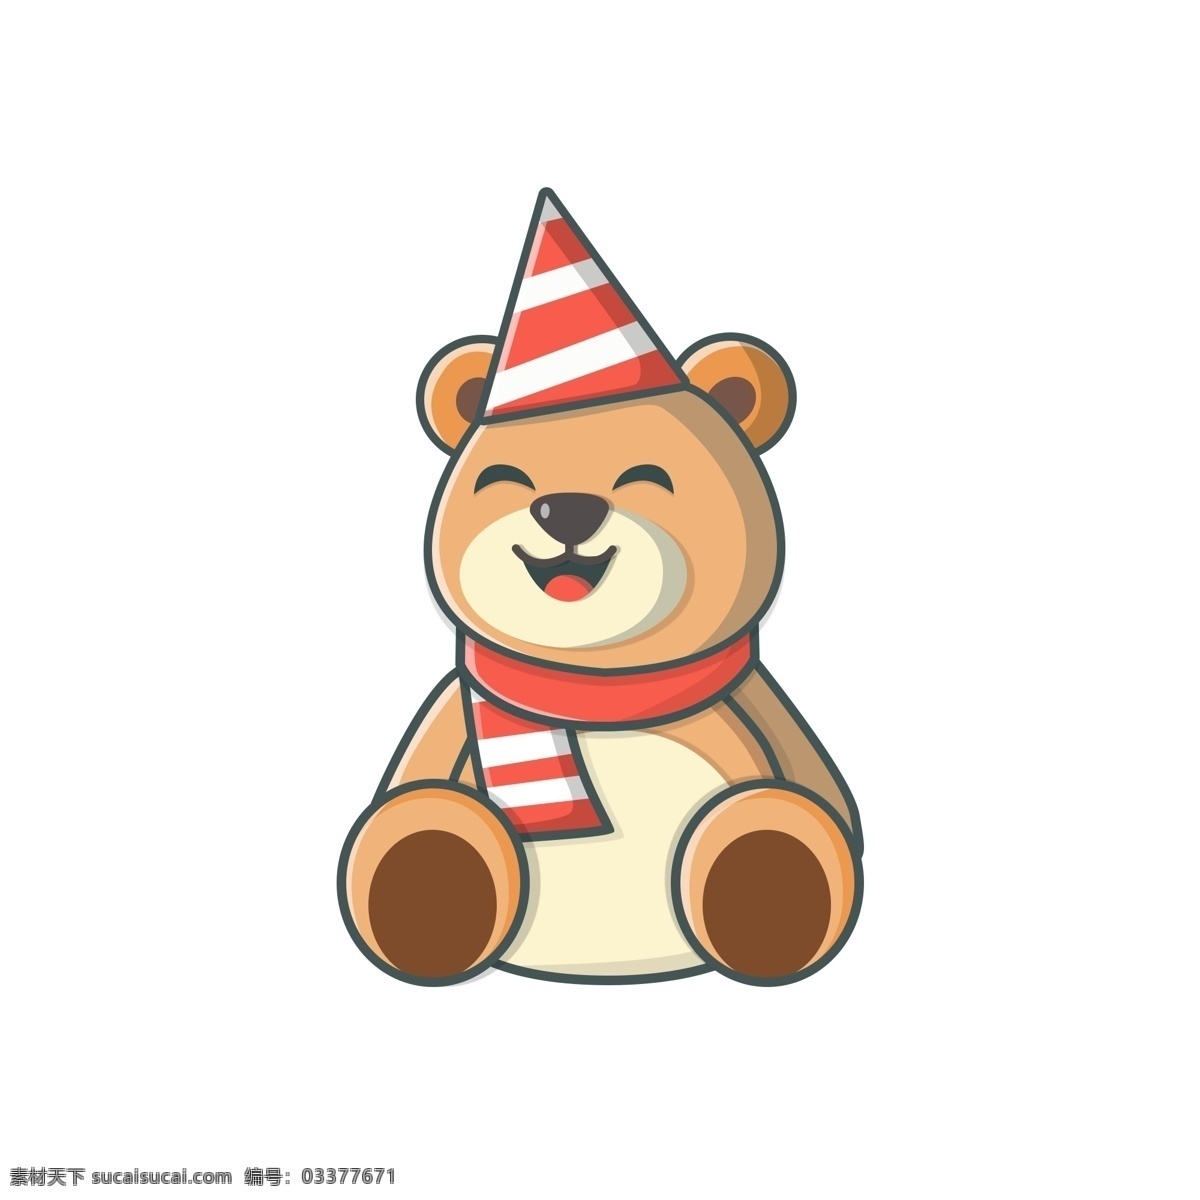 六一儿童节 可爱 泰迪 小 熊 棕色 娃娃 矢量图 孩子 玩具 围巾 帽子 玩 孩子玩具 扁平 红色 小熊公仔 礼物 party